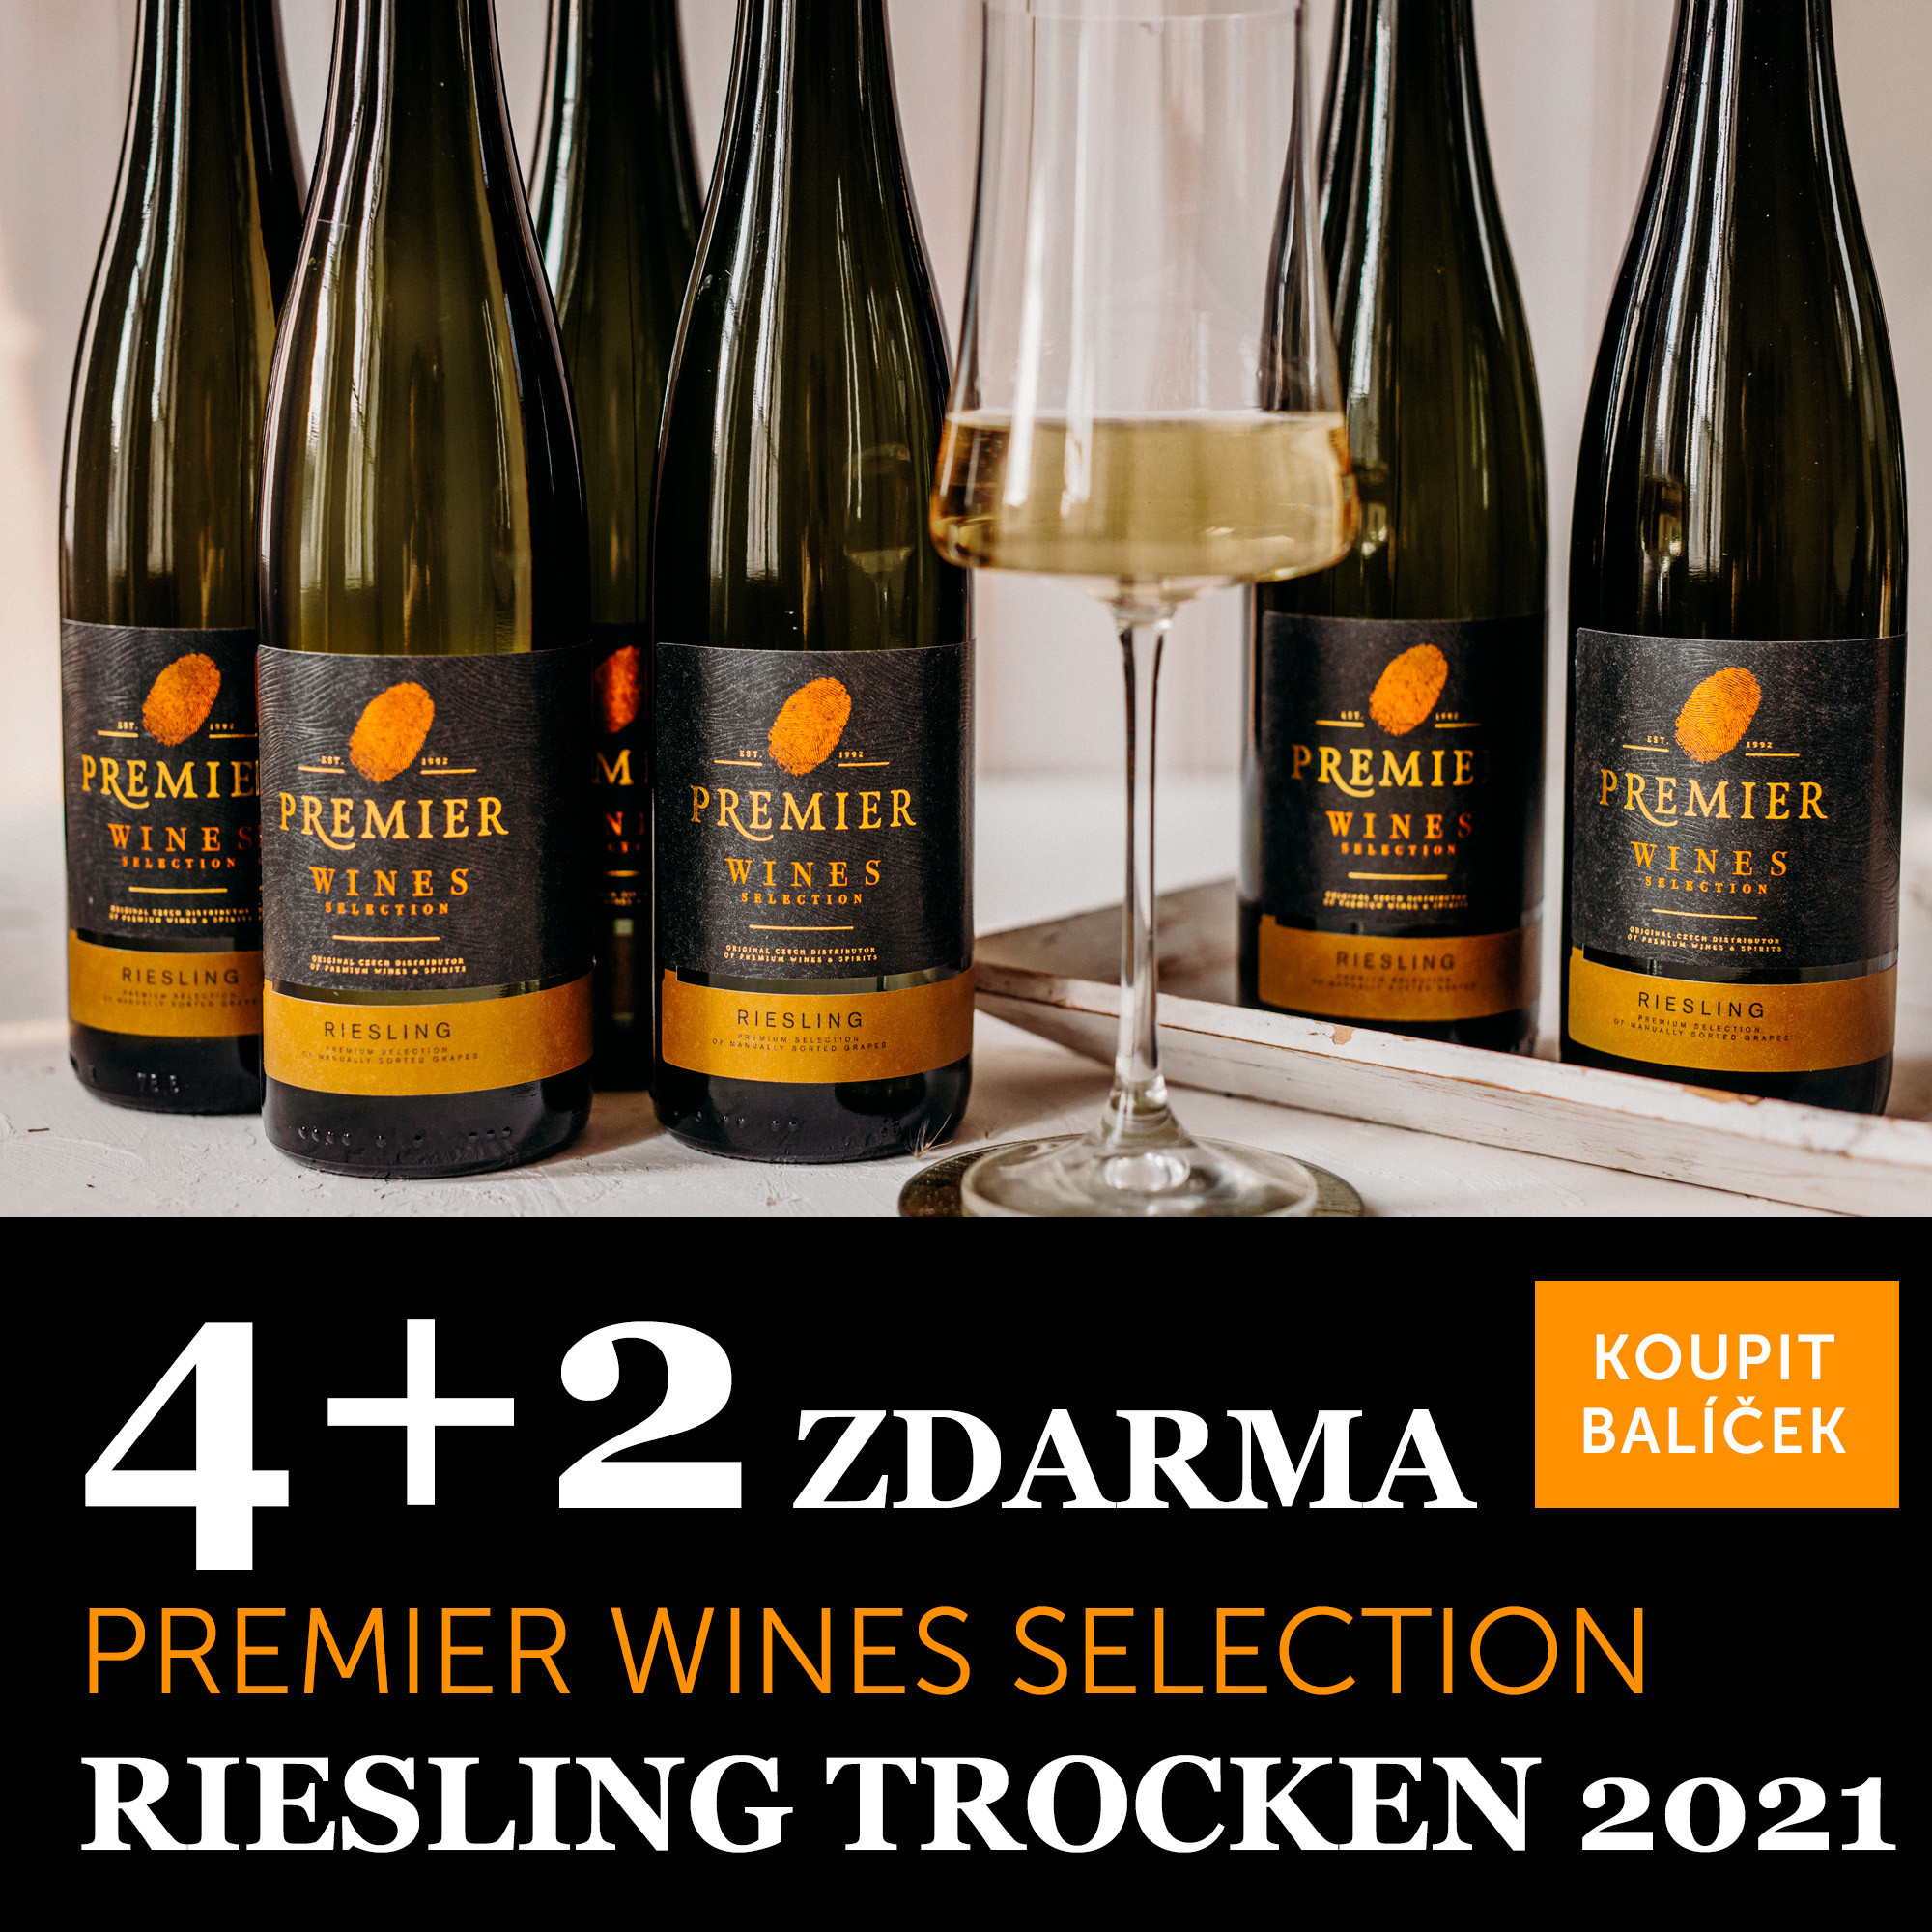 Premier Wines Selection Riesling trocken 4+2 zdarma!